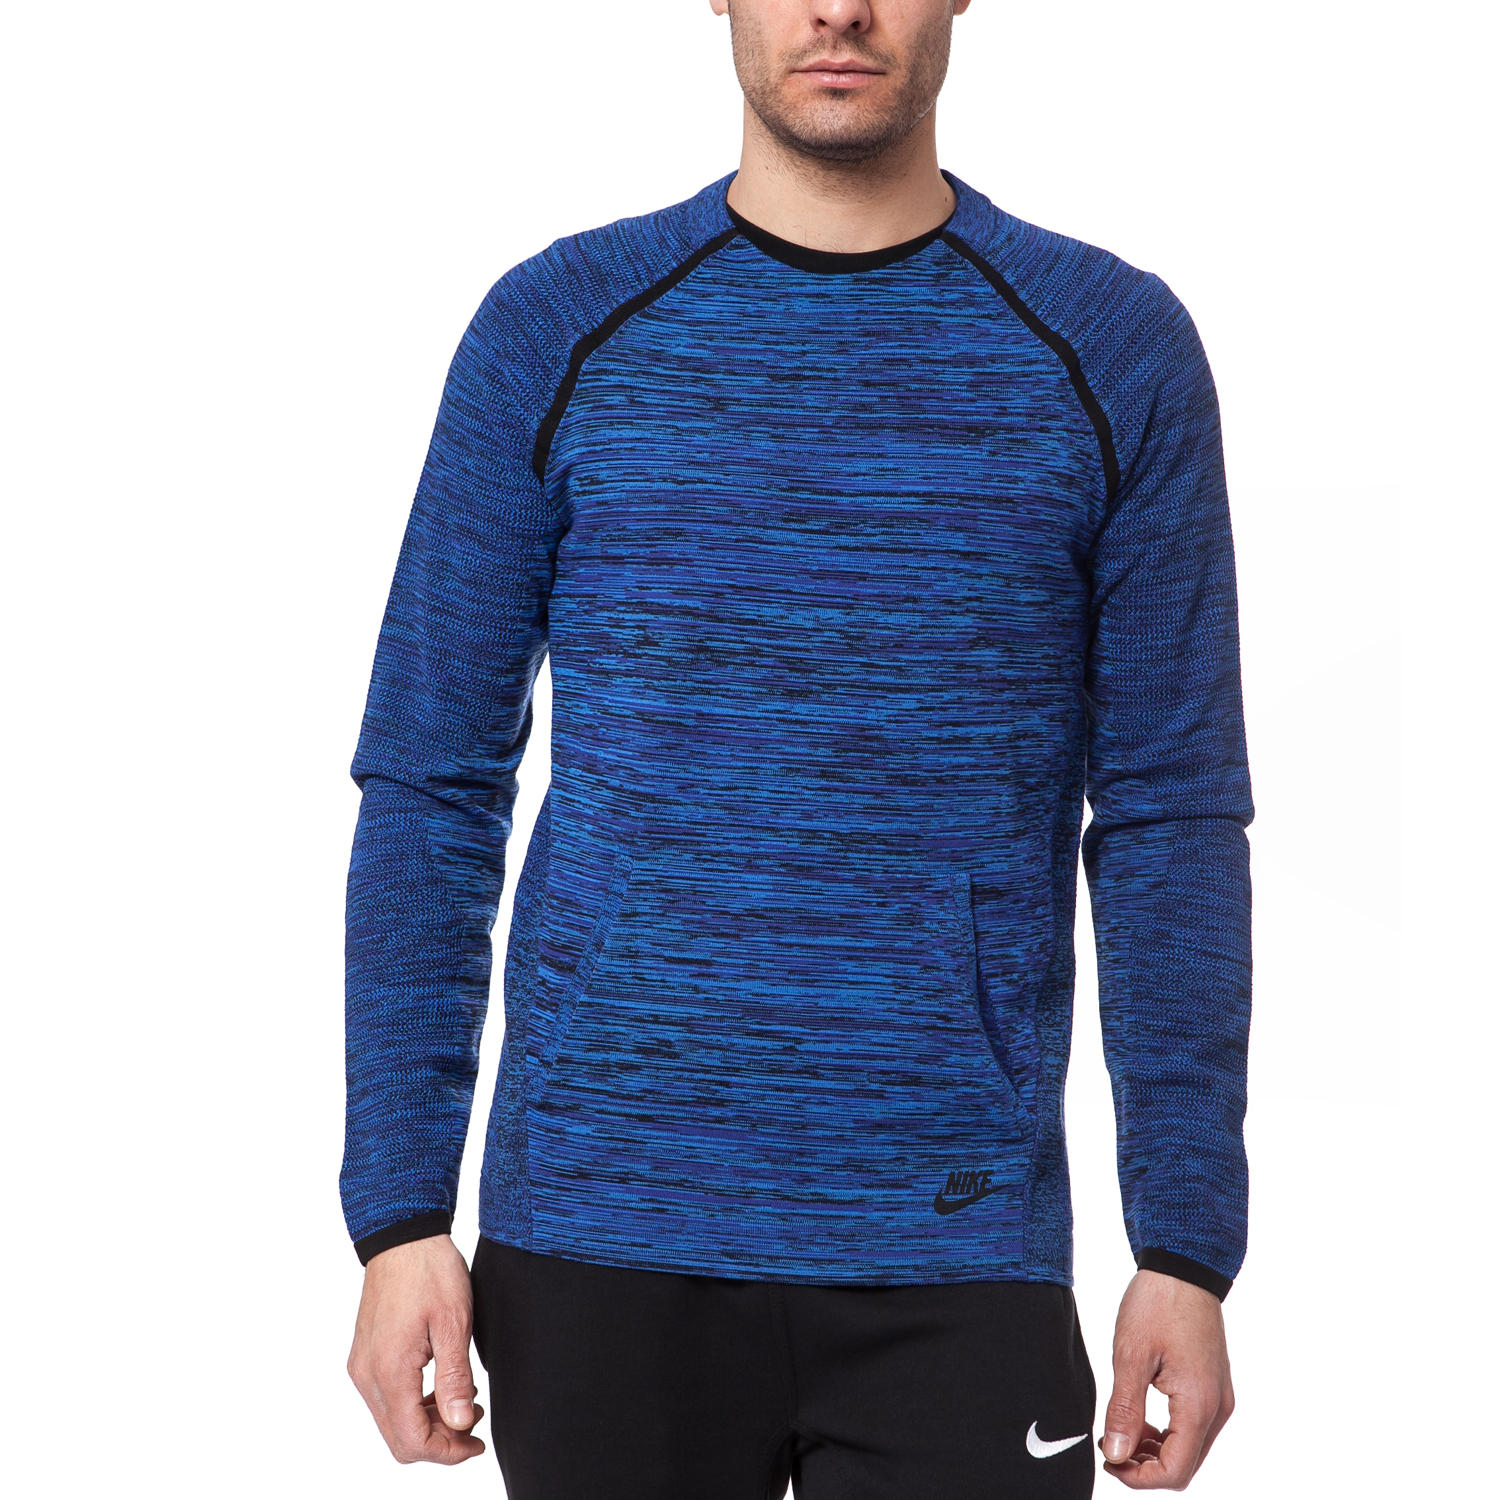 NIKE - Ανδρική μπλούζα Nike μπλε Ανδρικά/Ρούχα/Αθλητικά/Φούτερ-Μακρυμάνικα